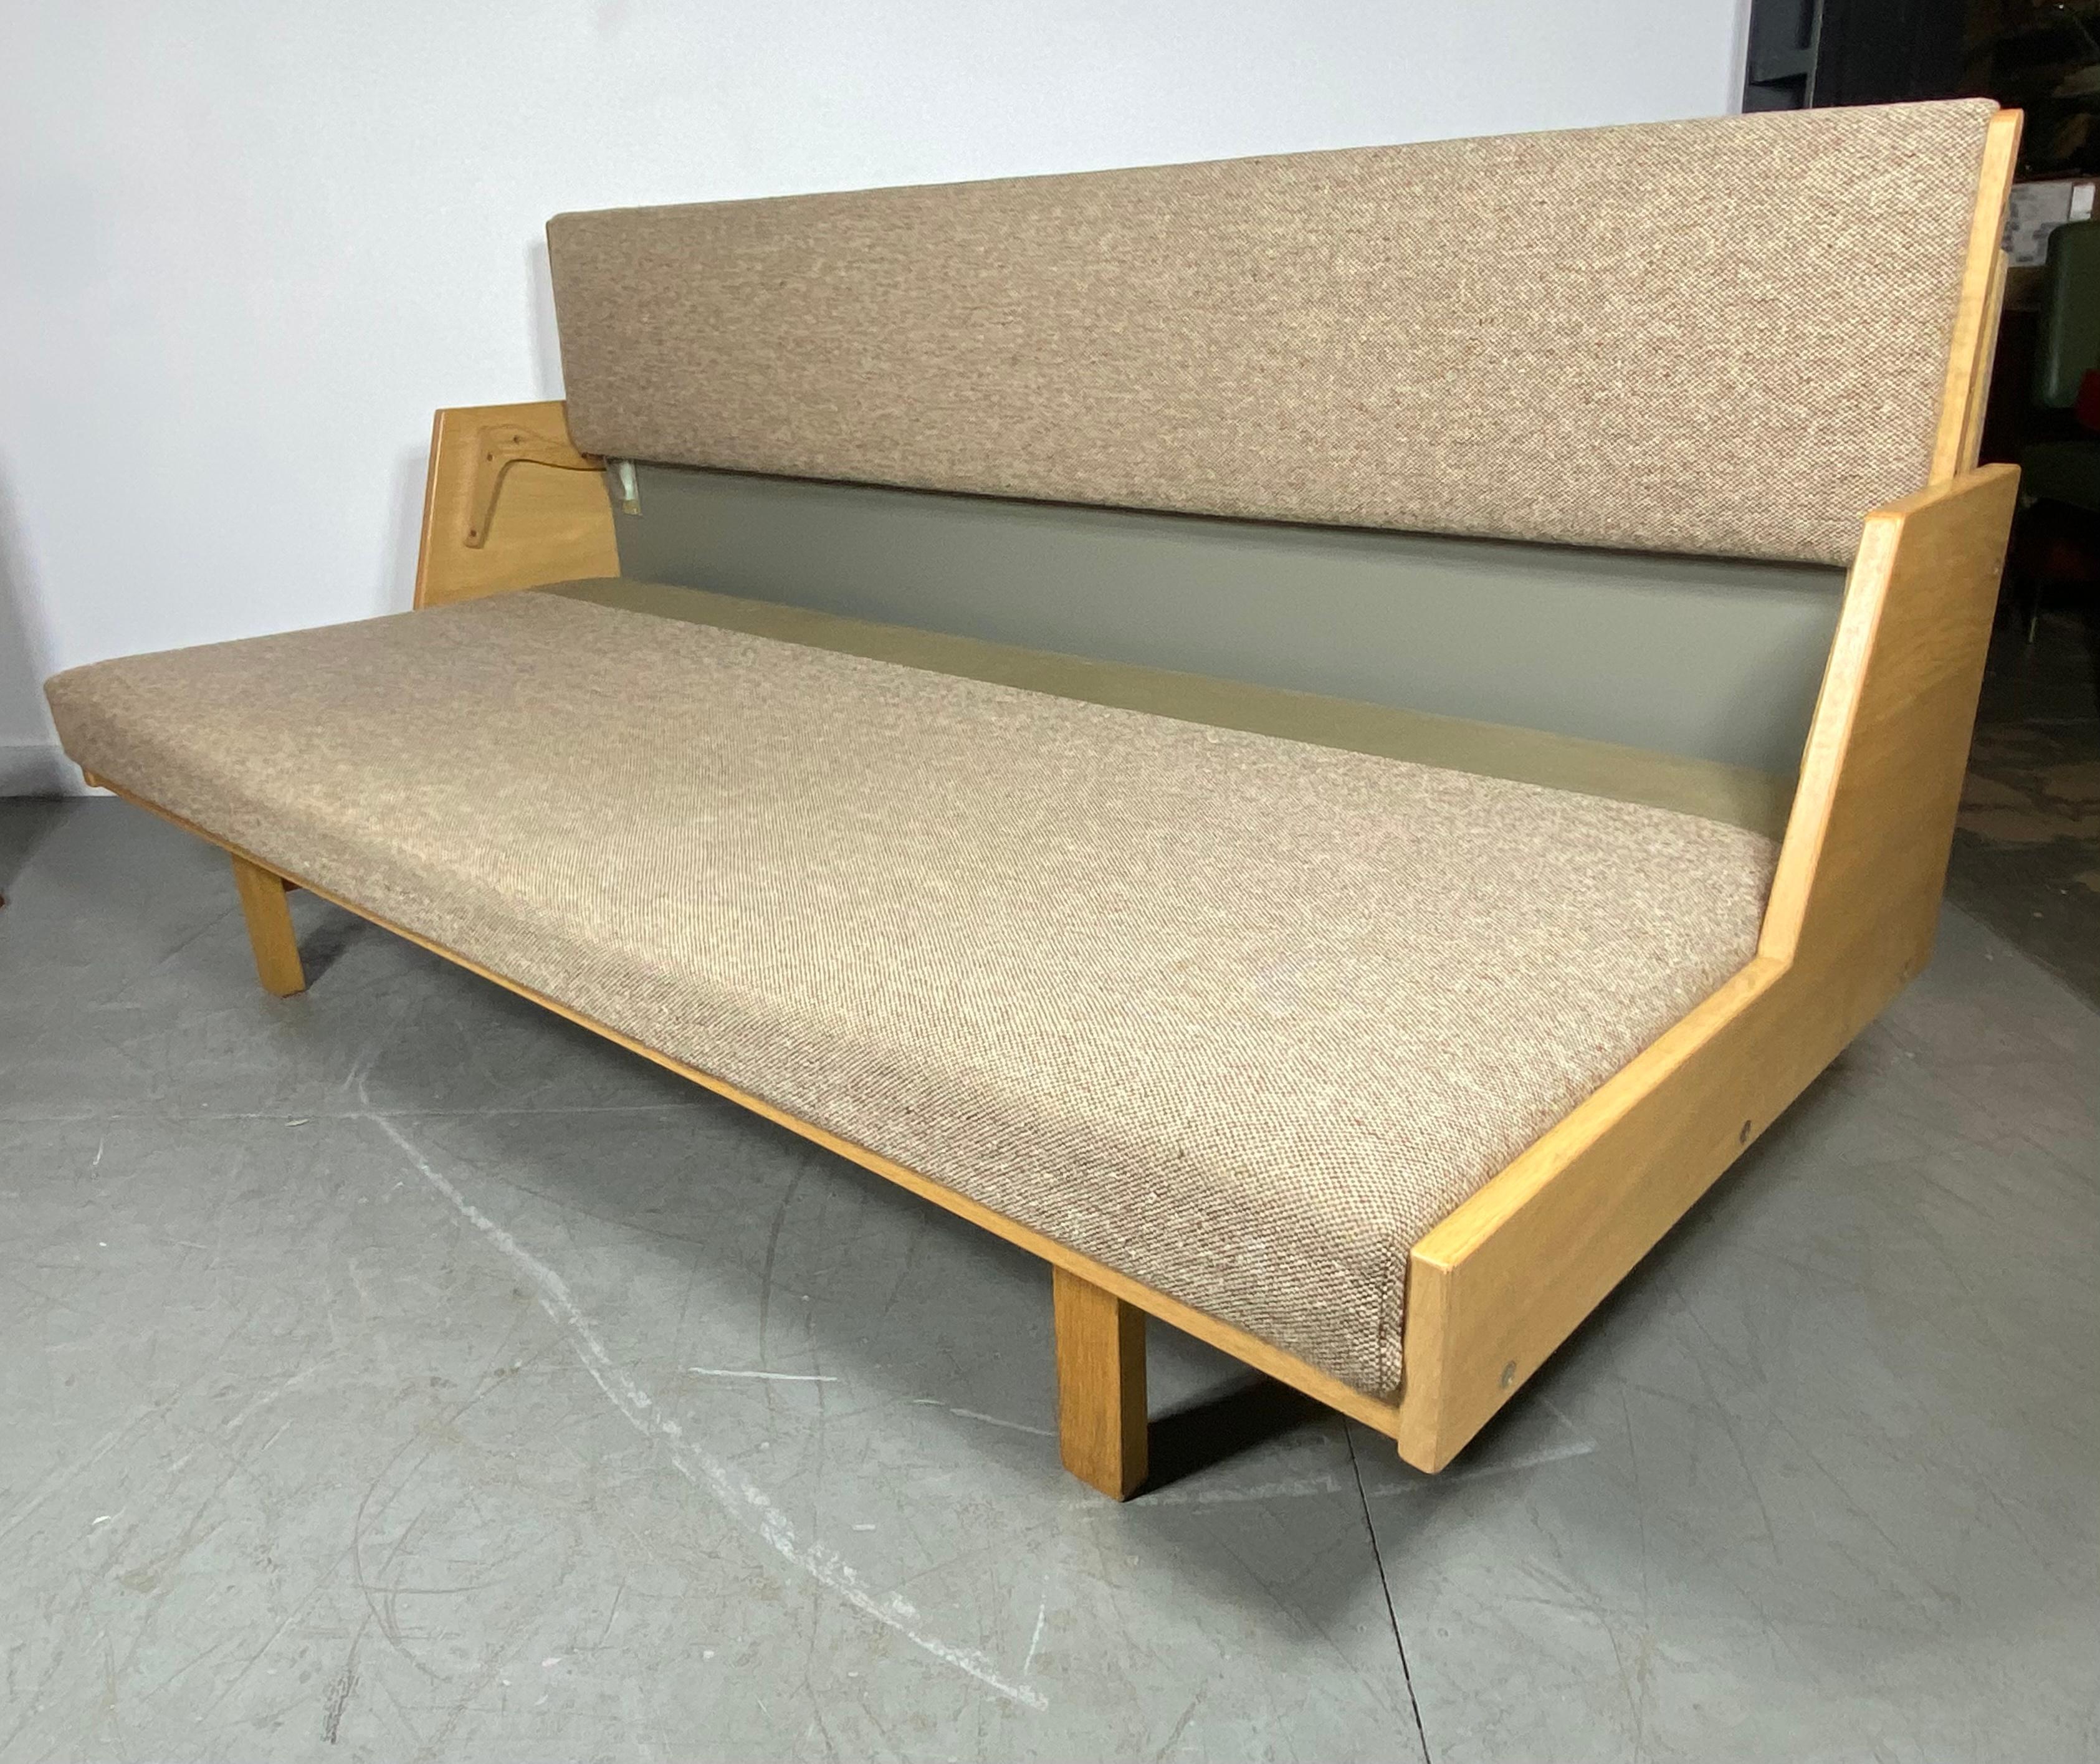 Conçu par Hans Wegner en 1954, le lit de jour GE 258 est un meuble polyvalent. Le dossier rembourré se soulève pour former un lit spacieux. Fabriqué en bois massif, ce banc est fabriqué à la main dans l'usine de GETAMA à Gedsted, au Danemark, par